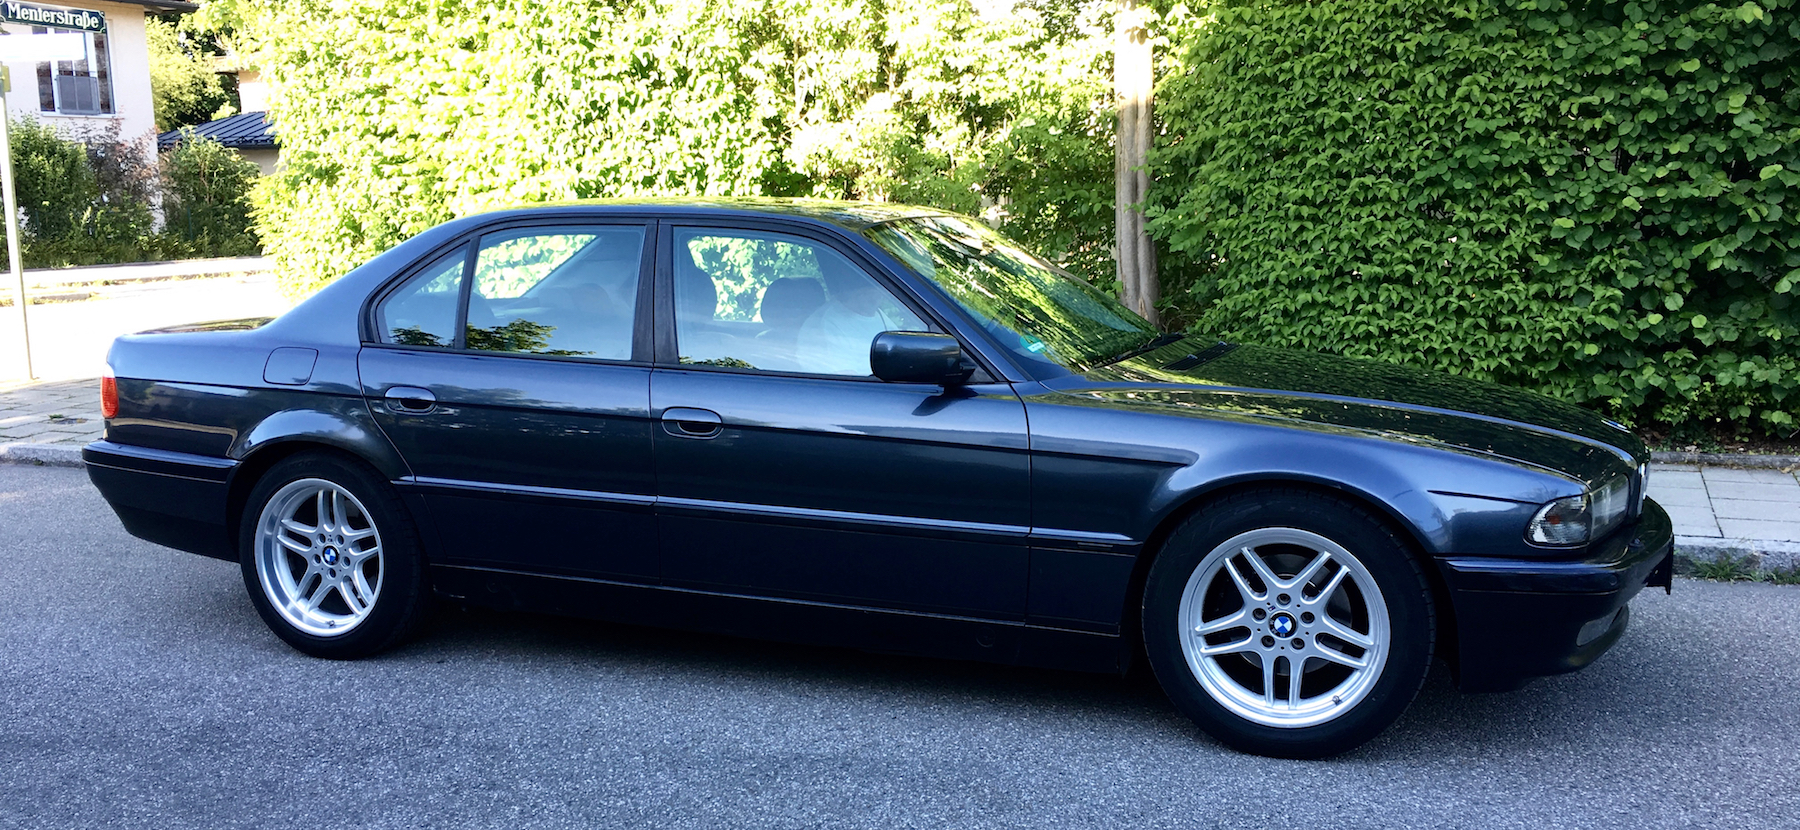 Unser neuer: Ein BMW 728i von 1997 in Fjordgrau und mit mehr als 320.000 km.